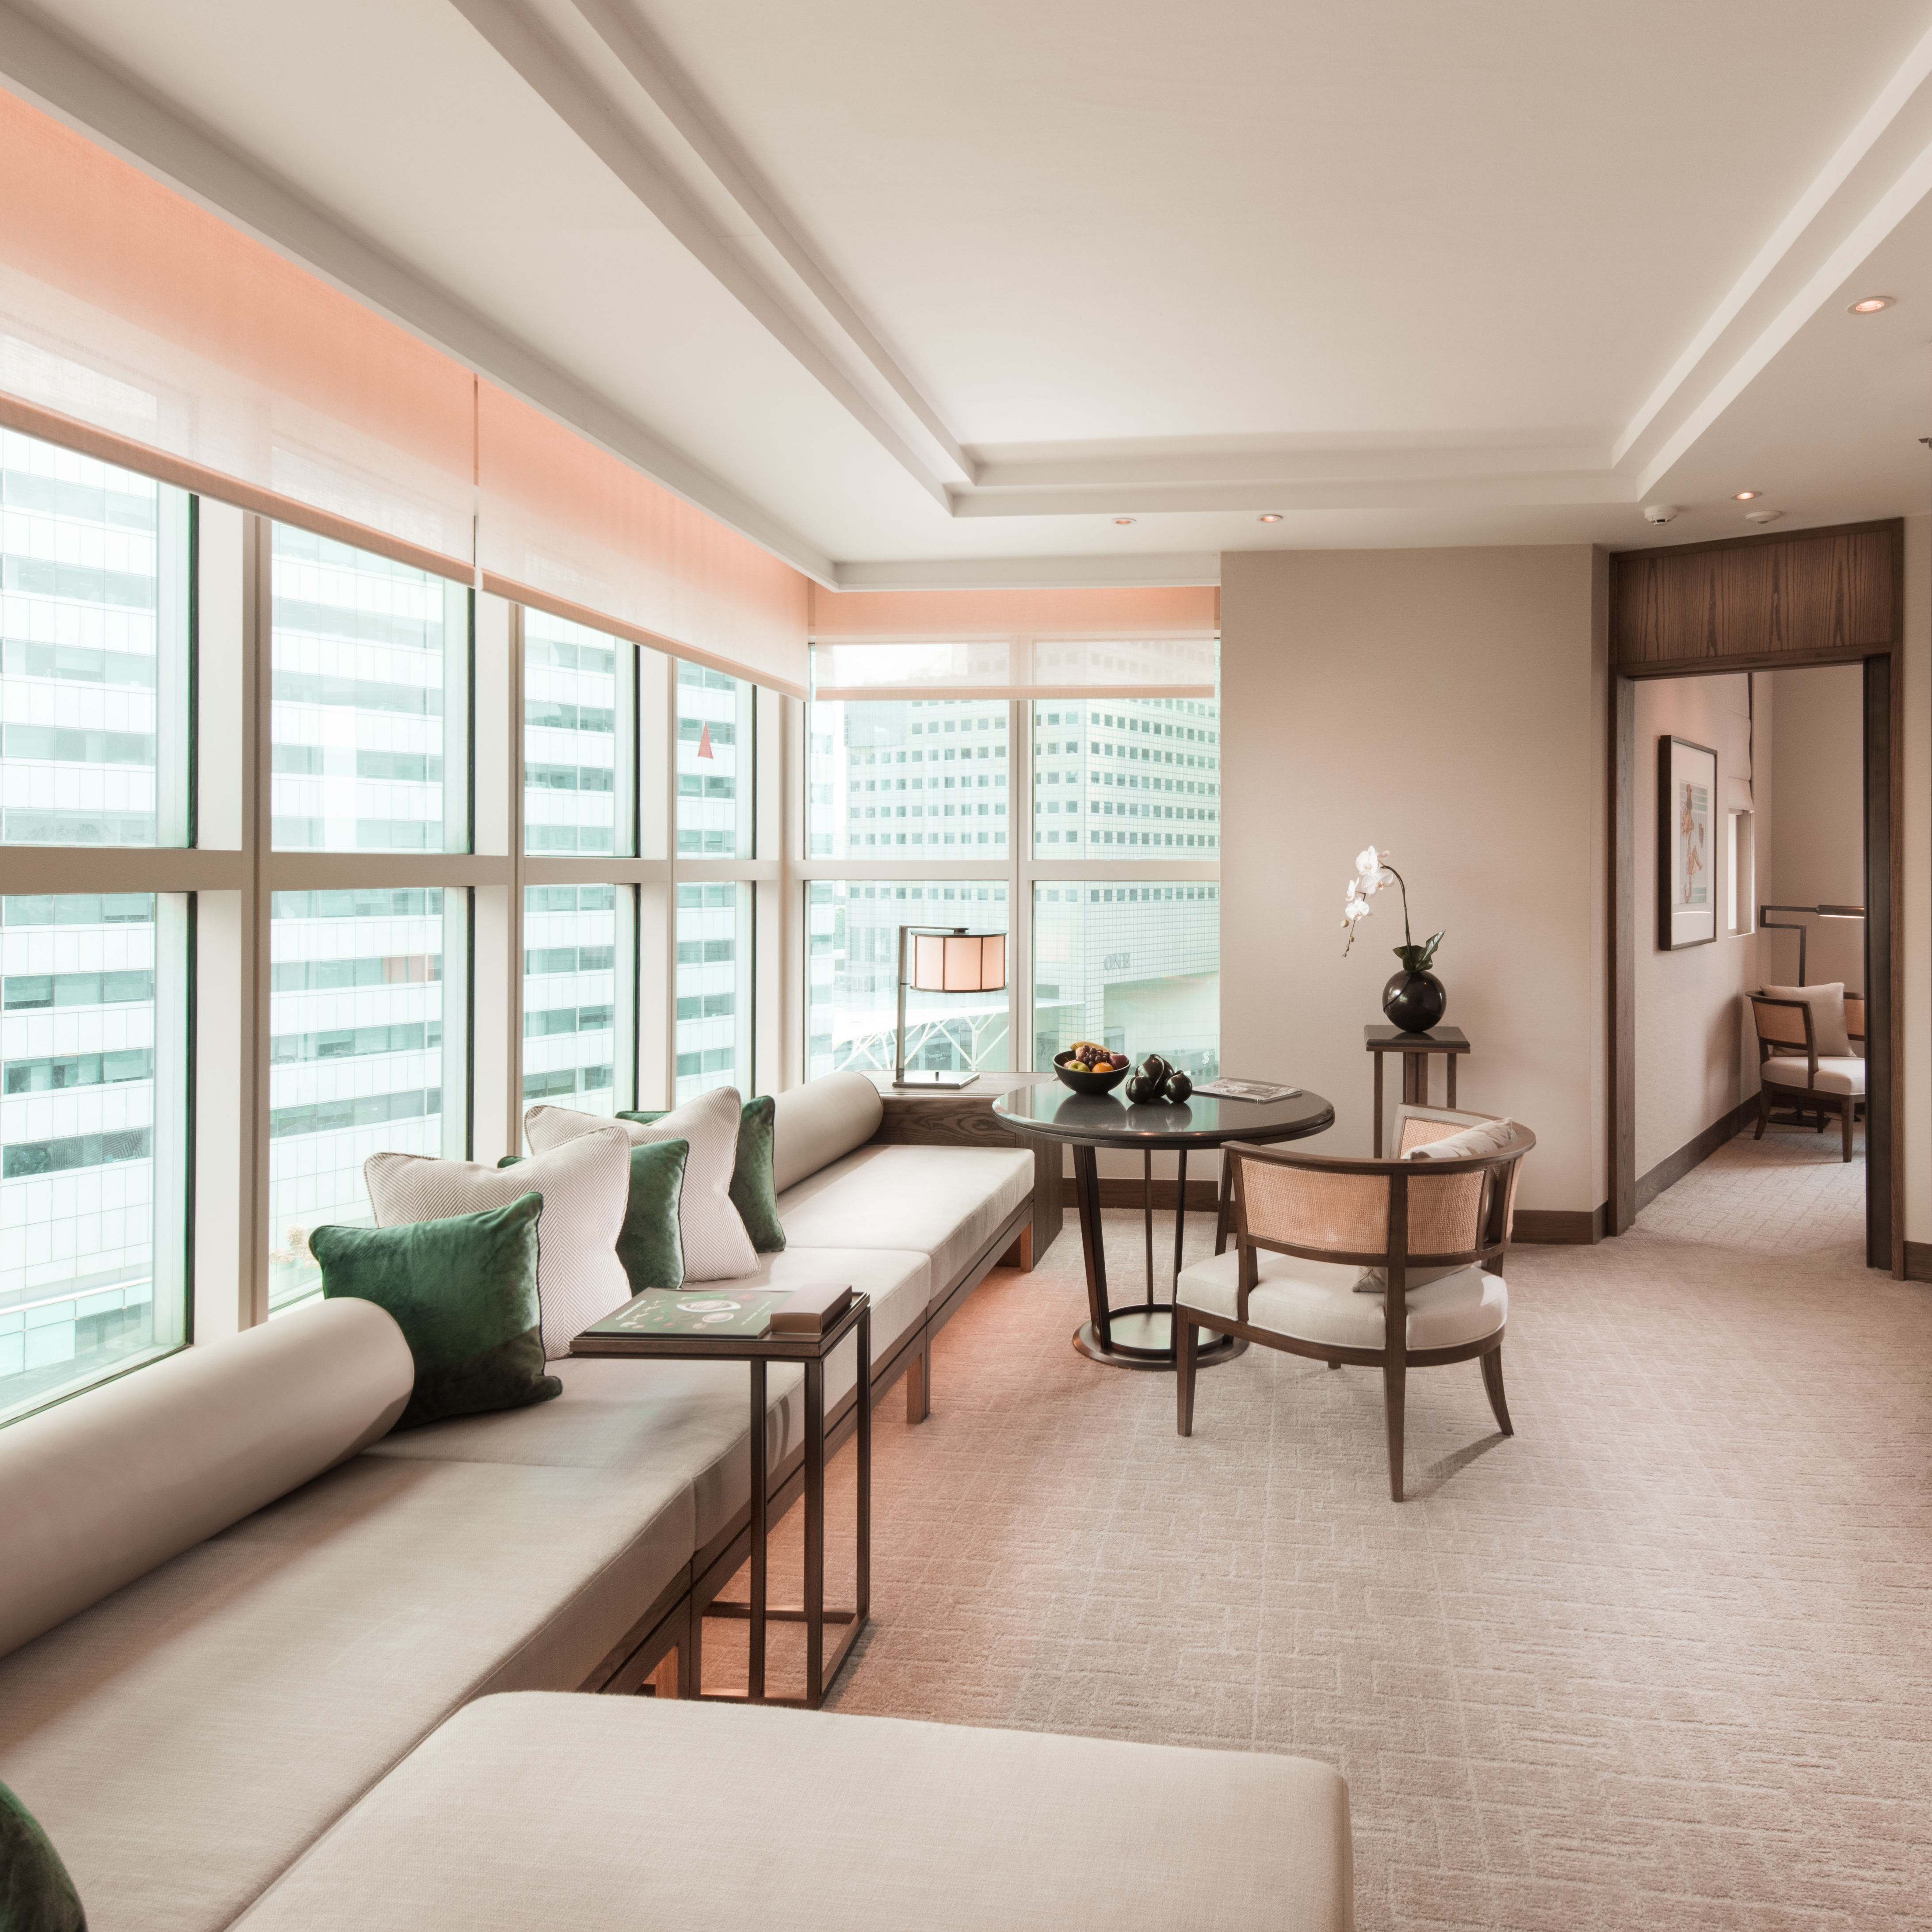 Centennial Suite – Wohnzimmer mit großen Fenstern und Sitzbereich